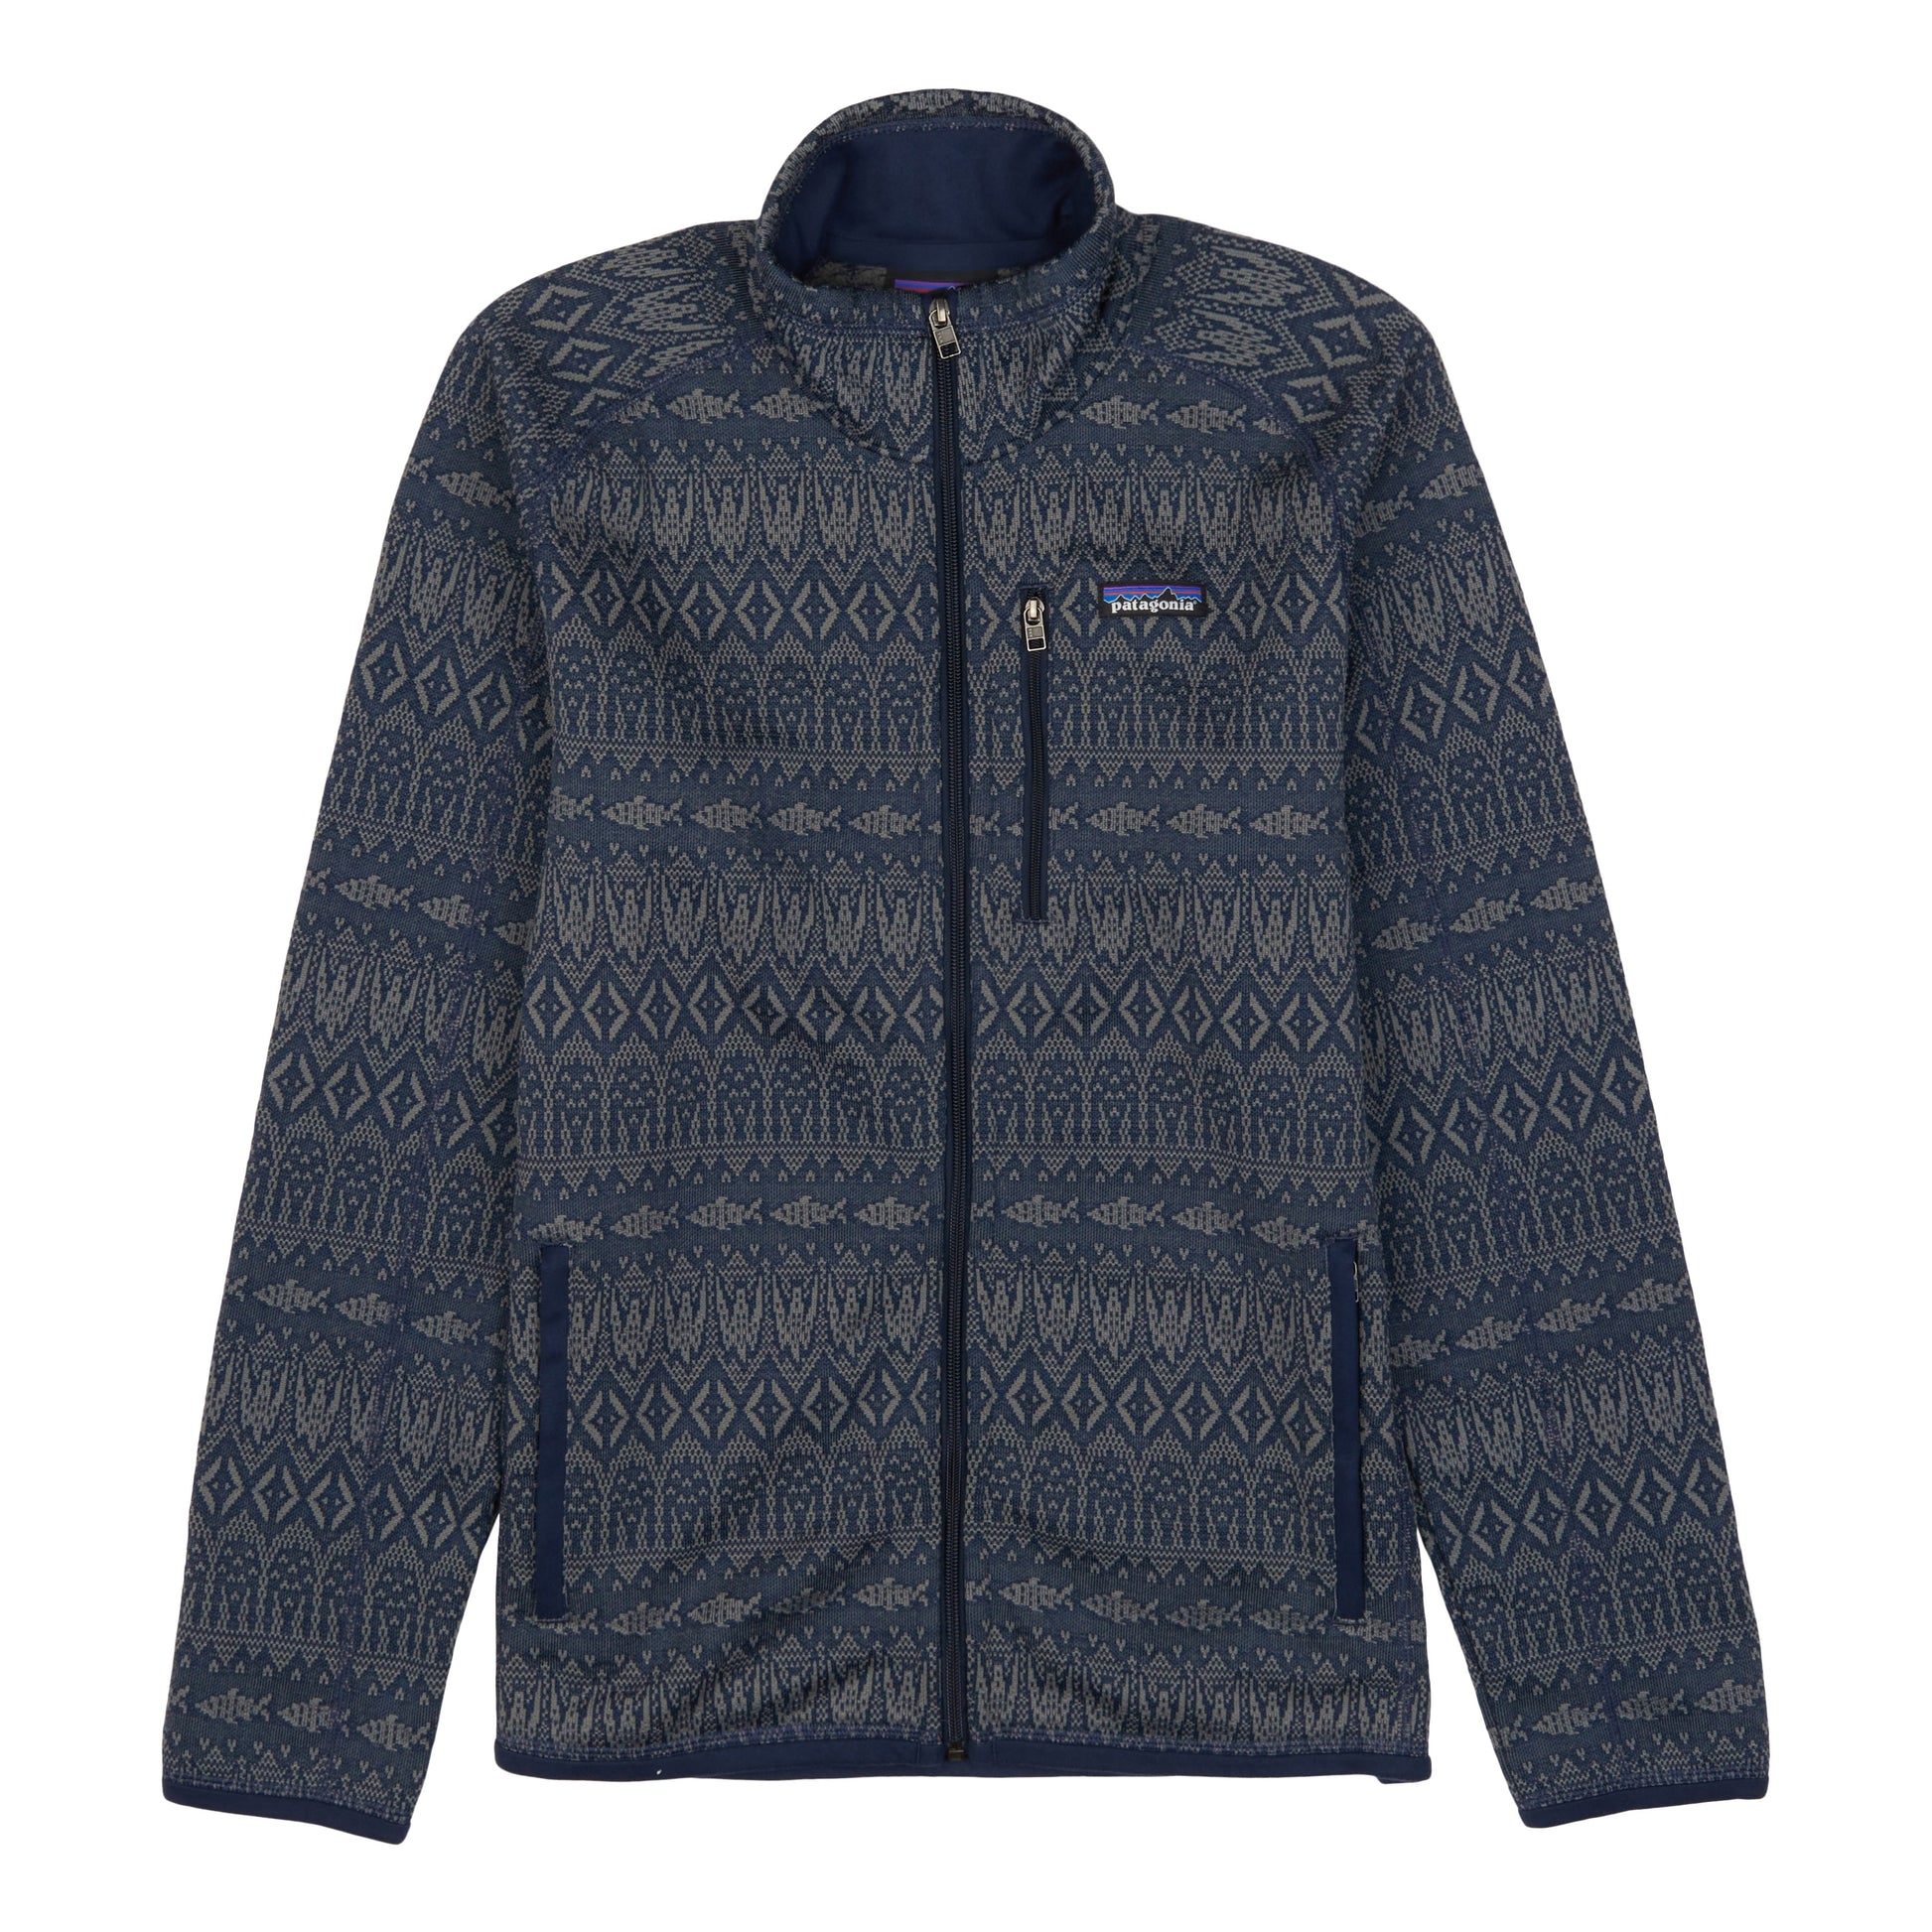 Patagonia Men's Better Sweater Jacket (Industrial Green) Fleece